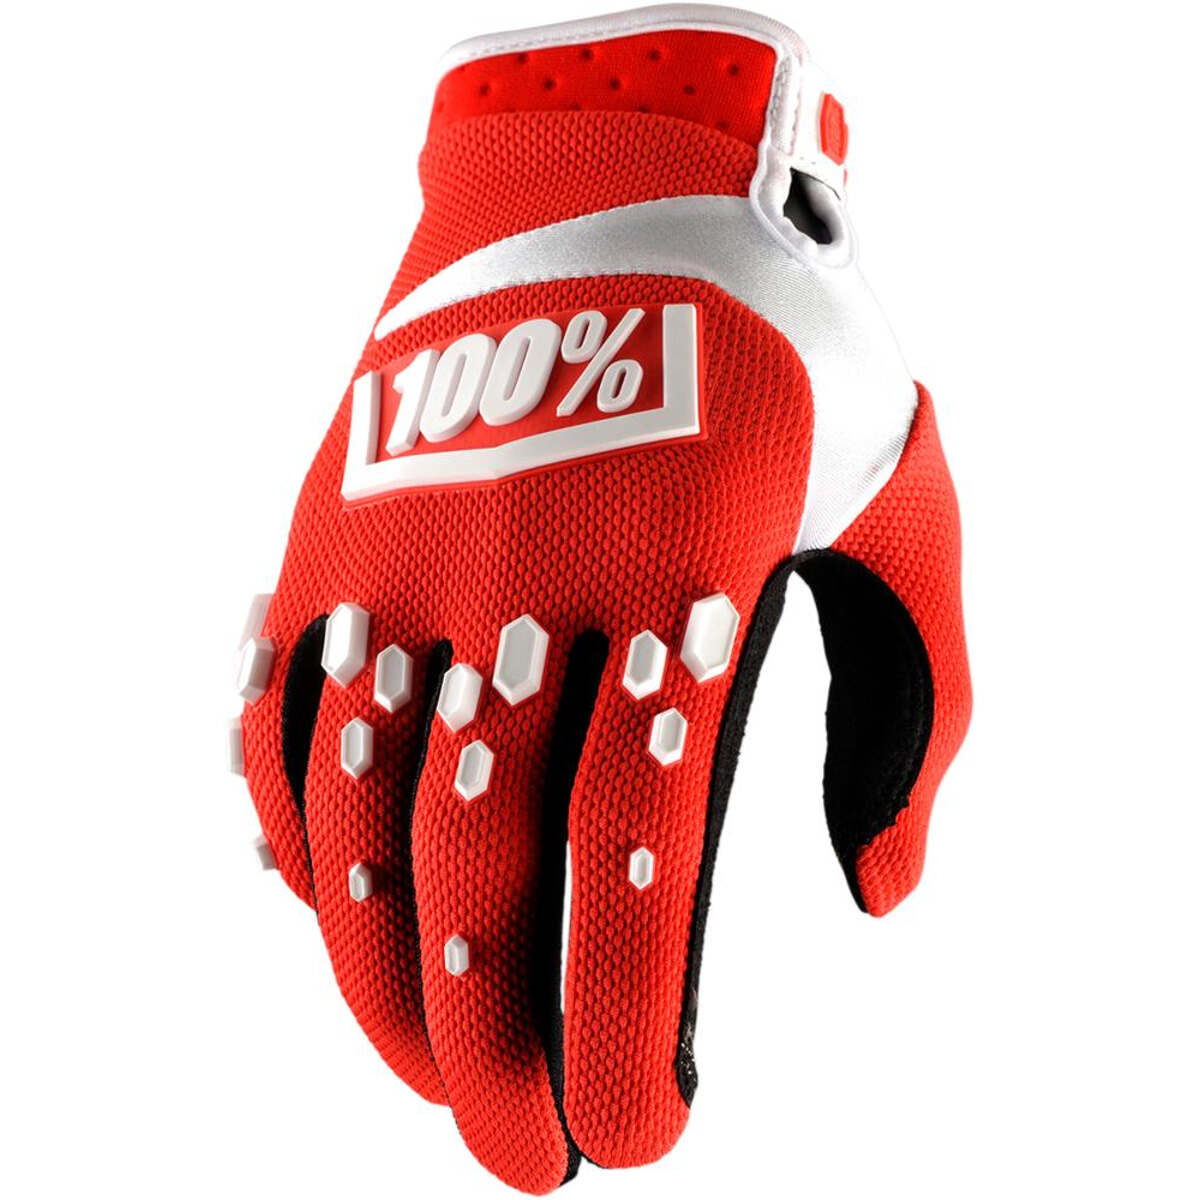 100% Bike-Handschuhe Airmatic Rot/Weiß